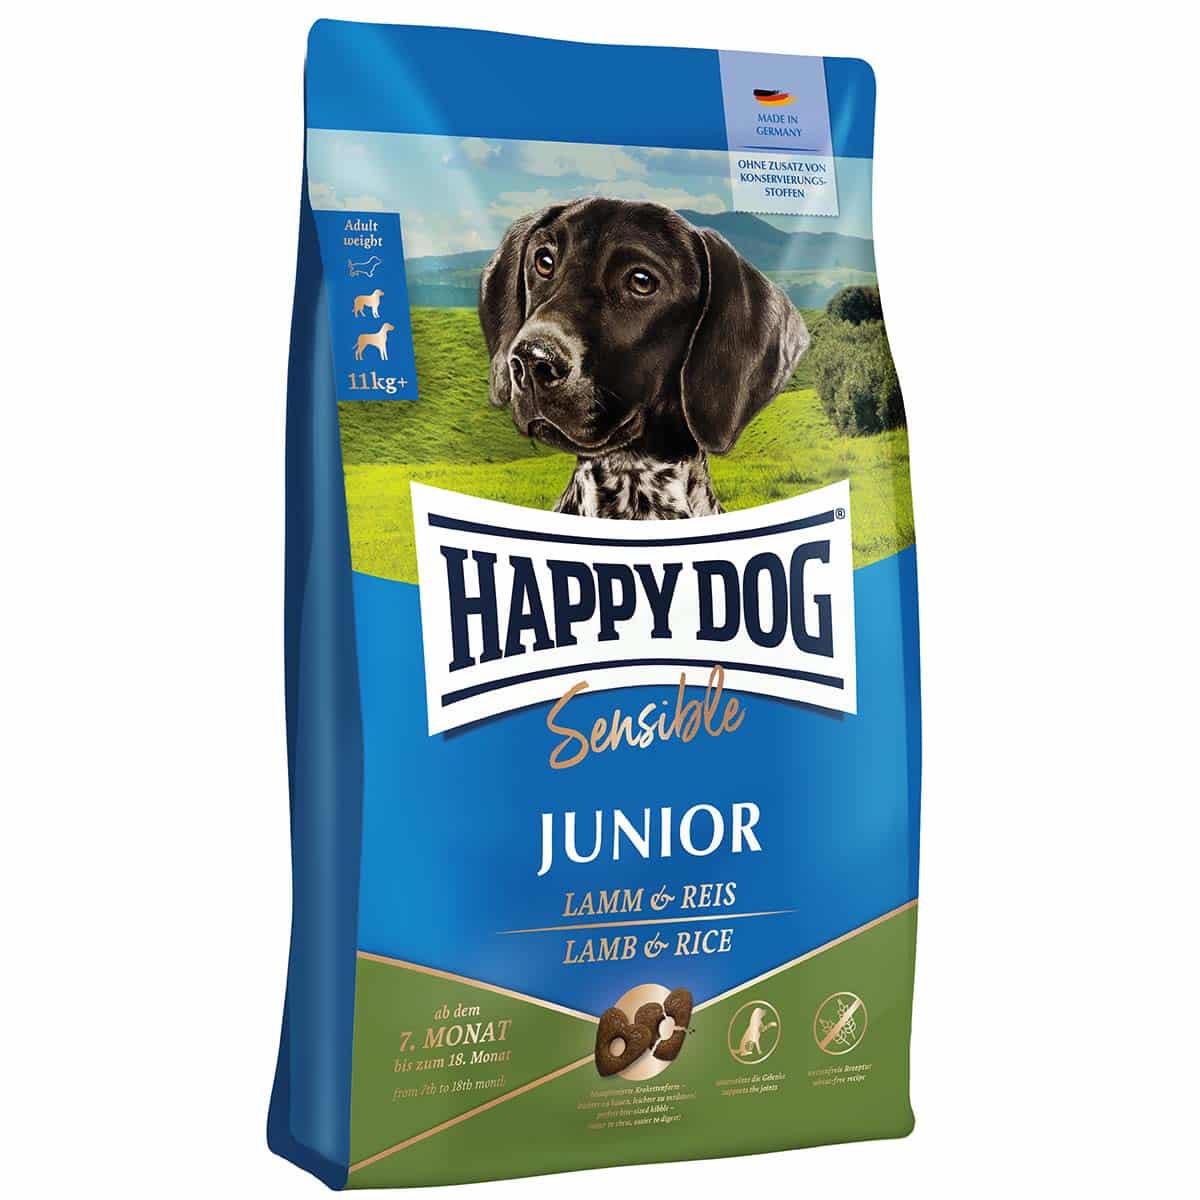 Happy Dog Supreme Sensible Junior Lamm & Reis 10kg